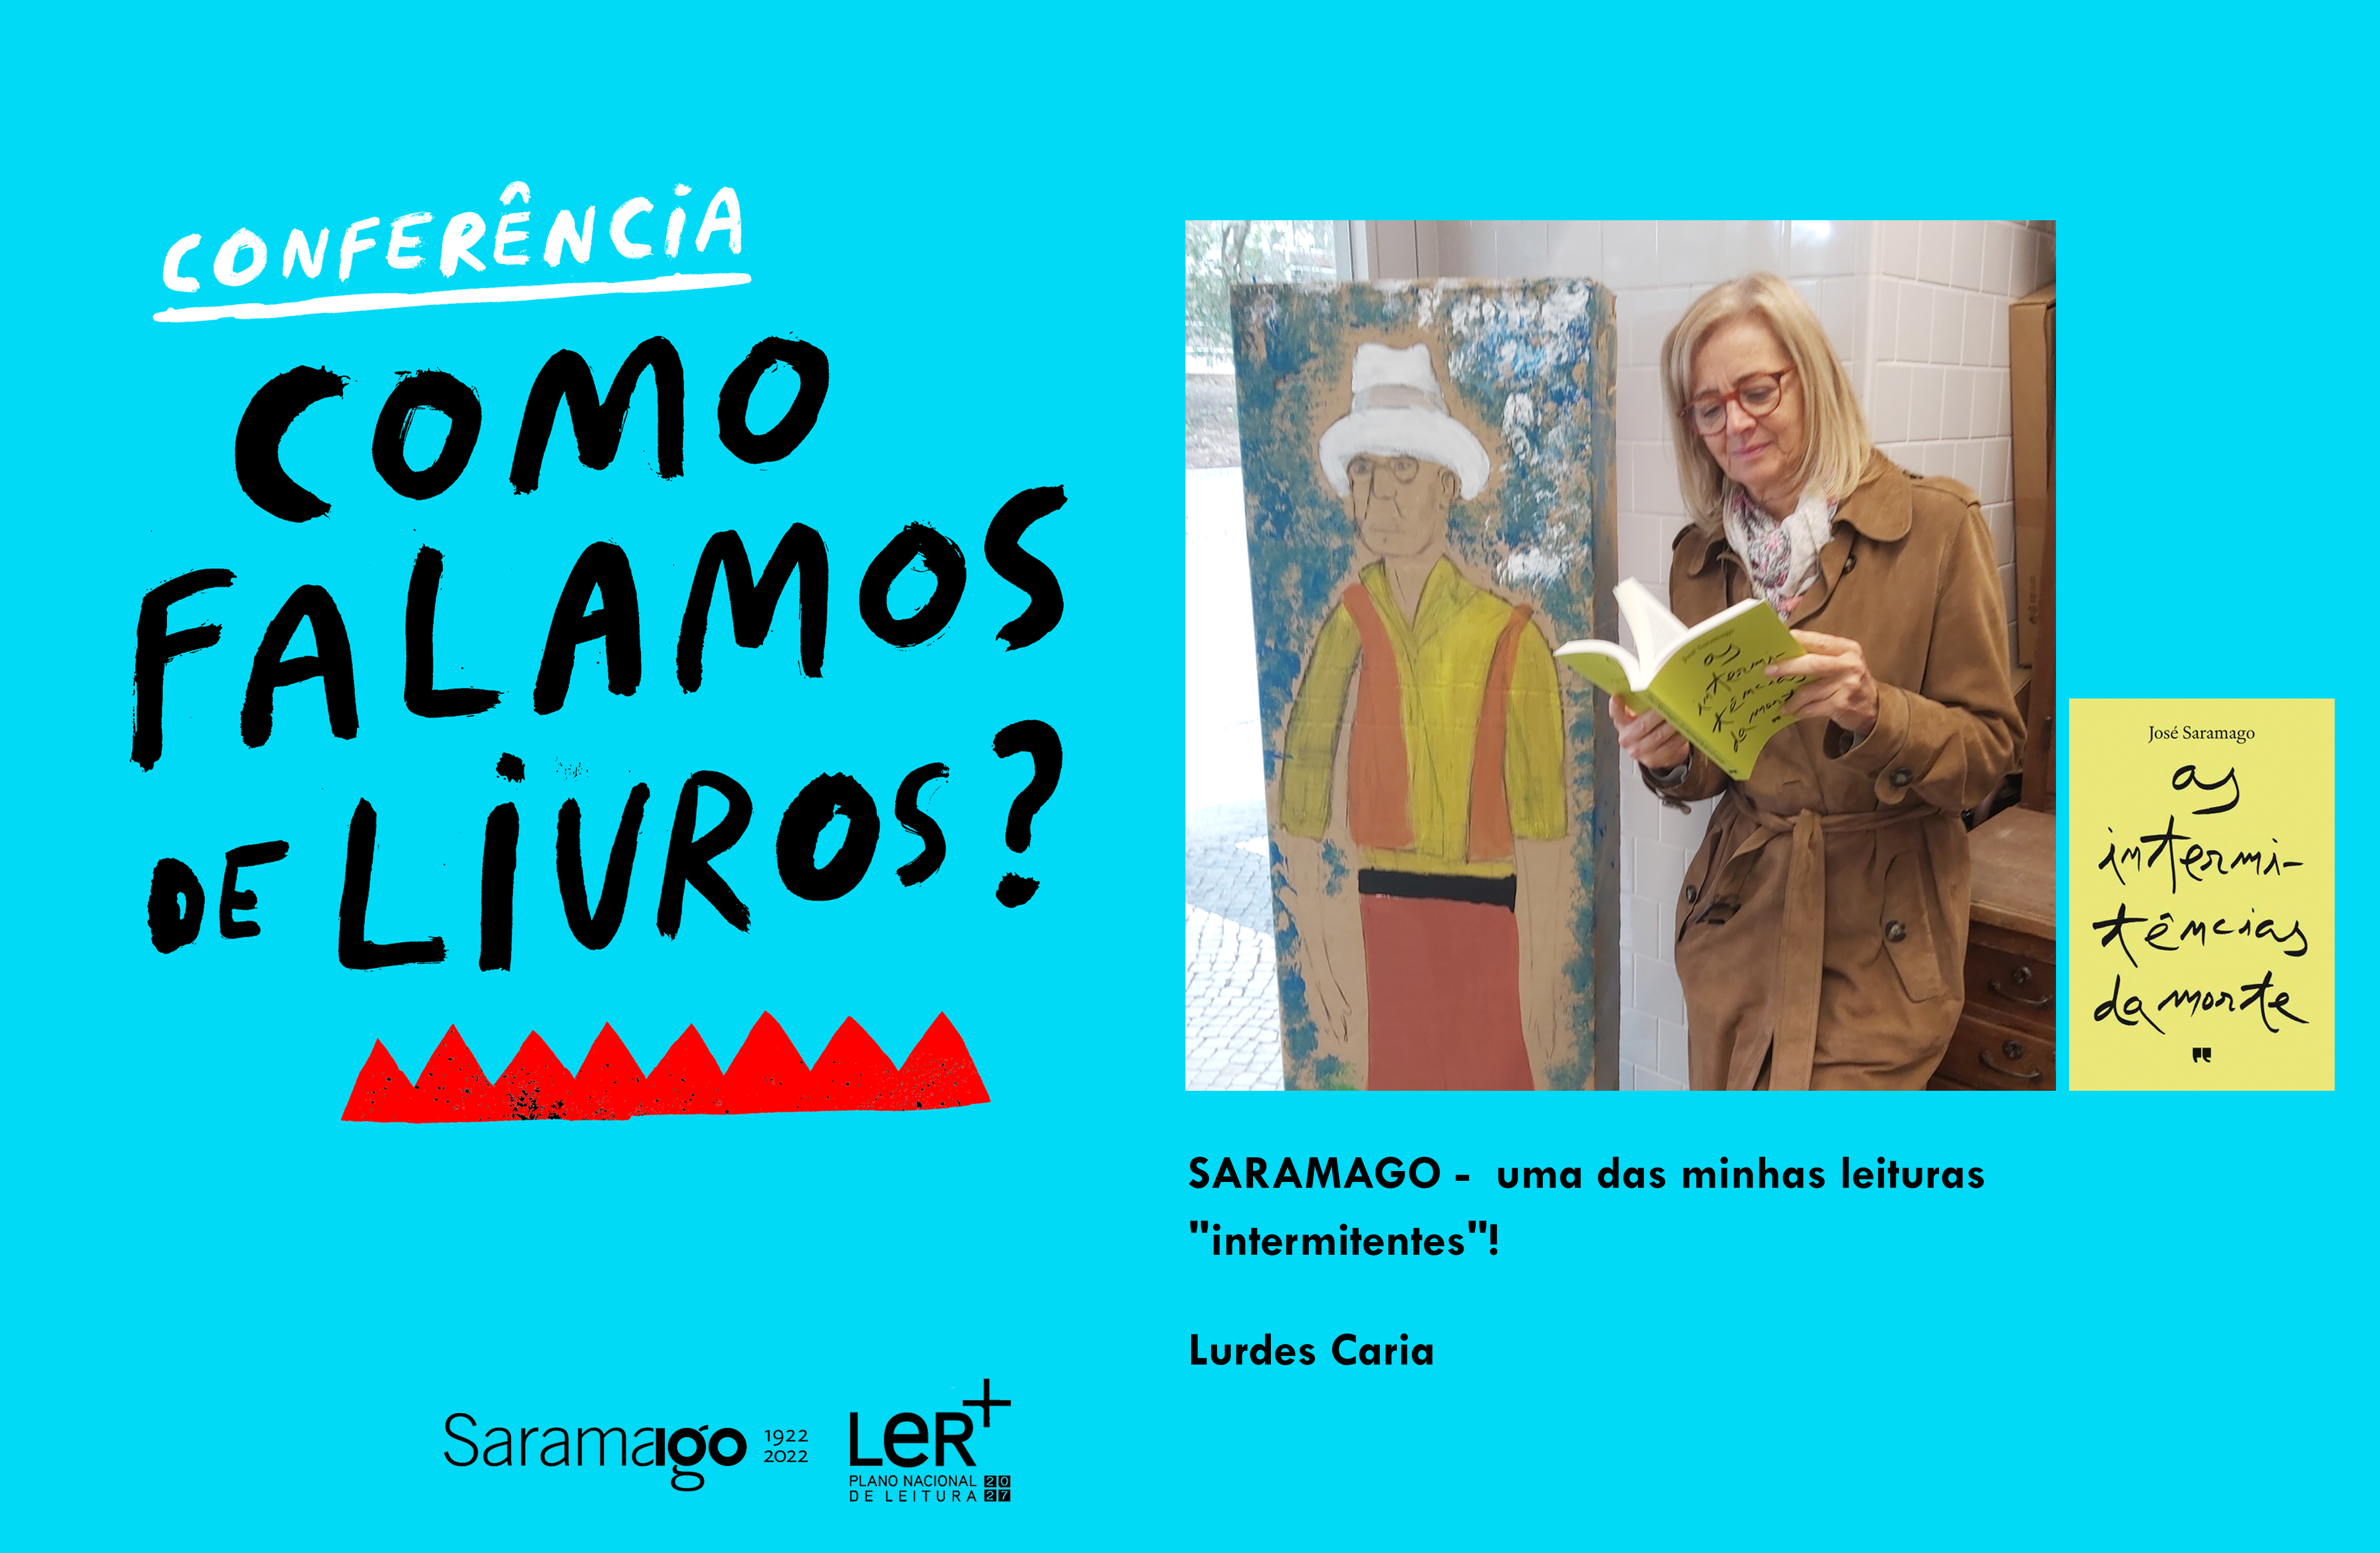 Ler_Saramago__Lurdes_Caria